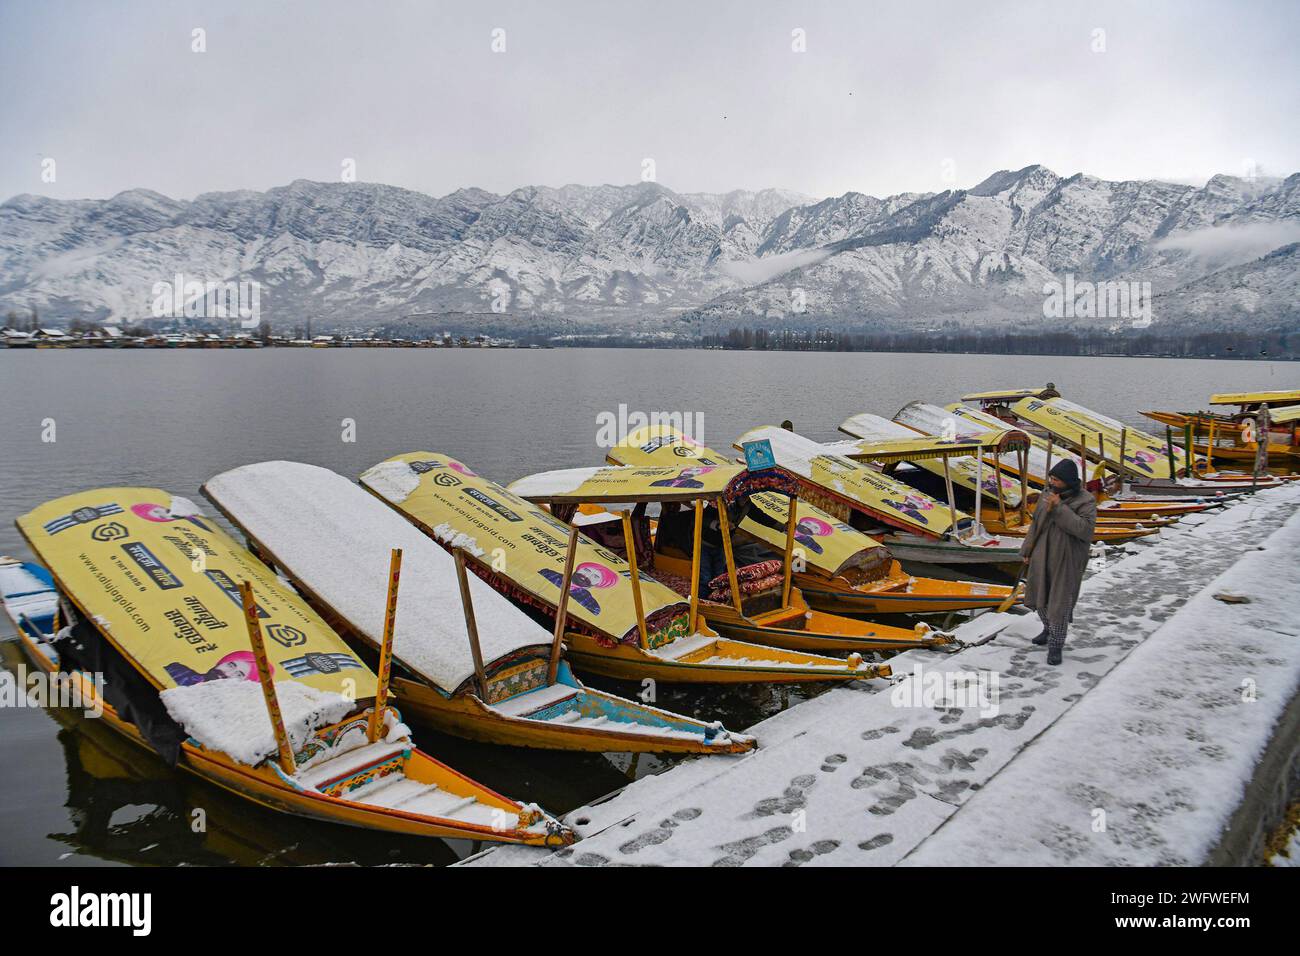 Le nevicate fresche nei tratti più alti della valle del Kashmir hanno infranto uno dei più lunghi periodi di asciutto di circa due mesi di questa stagione. Una fresca nevicata ha attirato la gente del posto e i turisti. L'economia dello stato è fortemente dipendente dall'industria turistica e la nevicata dopo una lunga attesa attira i turisti nella scintillante valle d'argento. Kashmir, India. Foto Stock